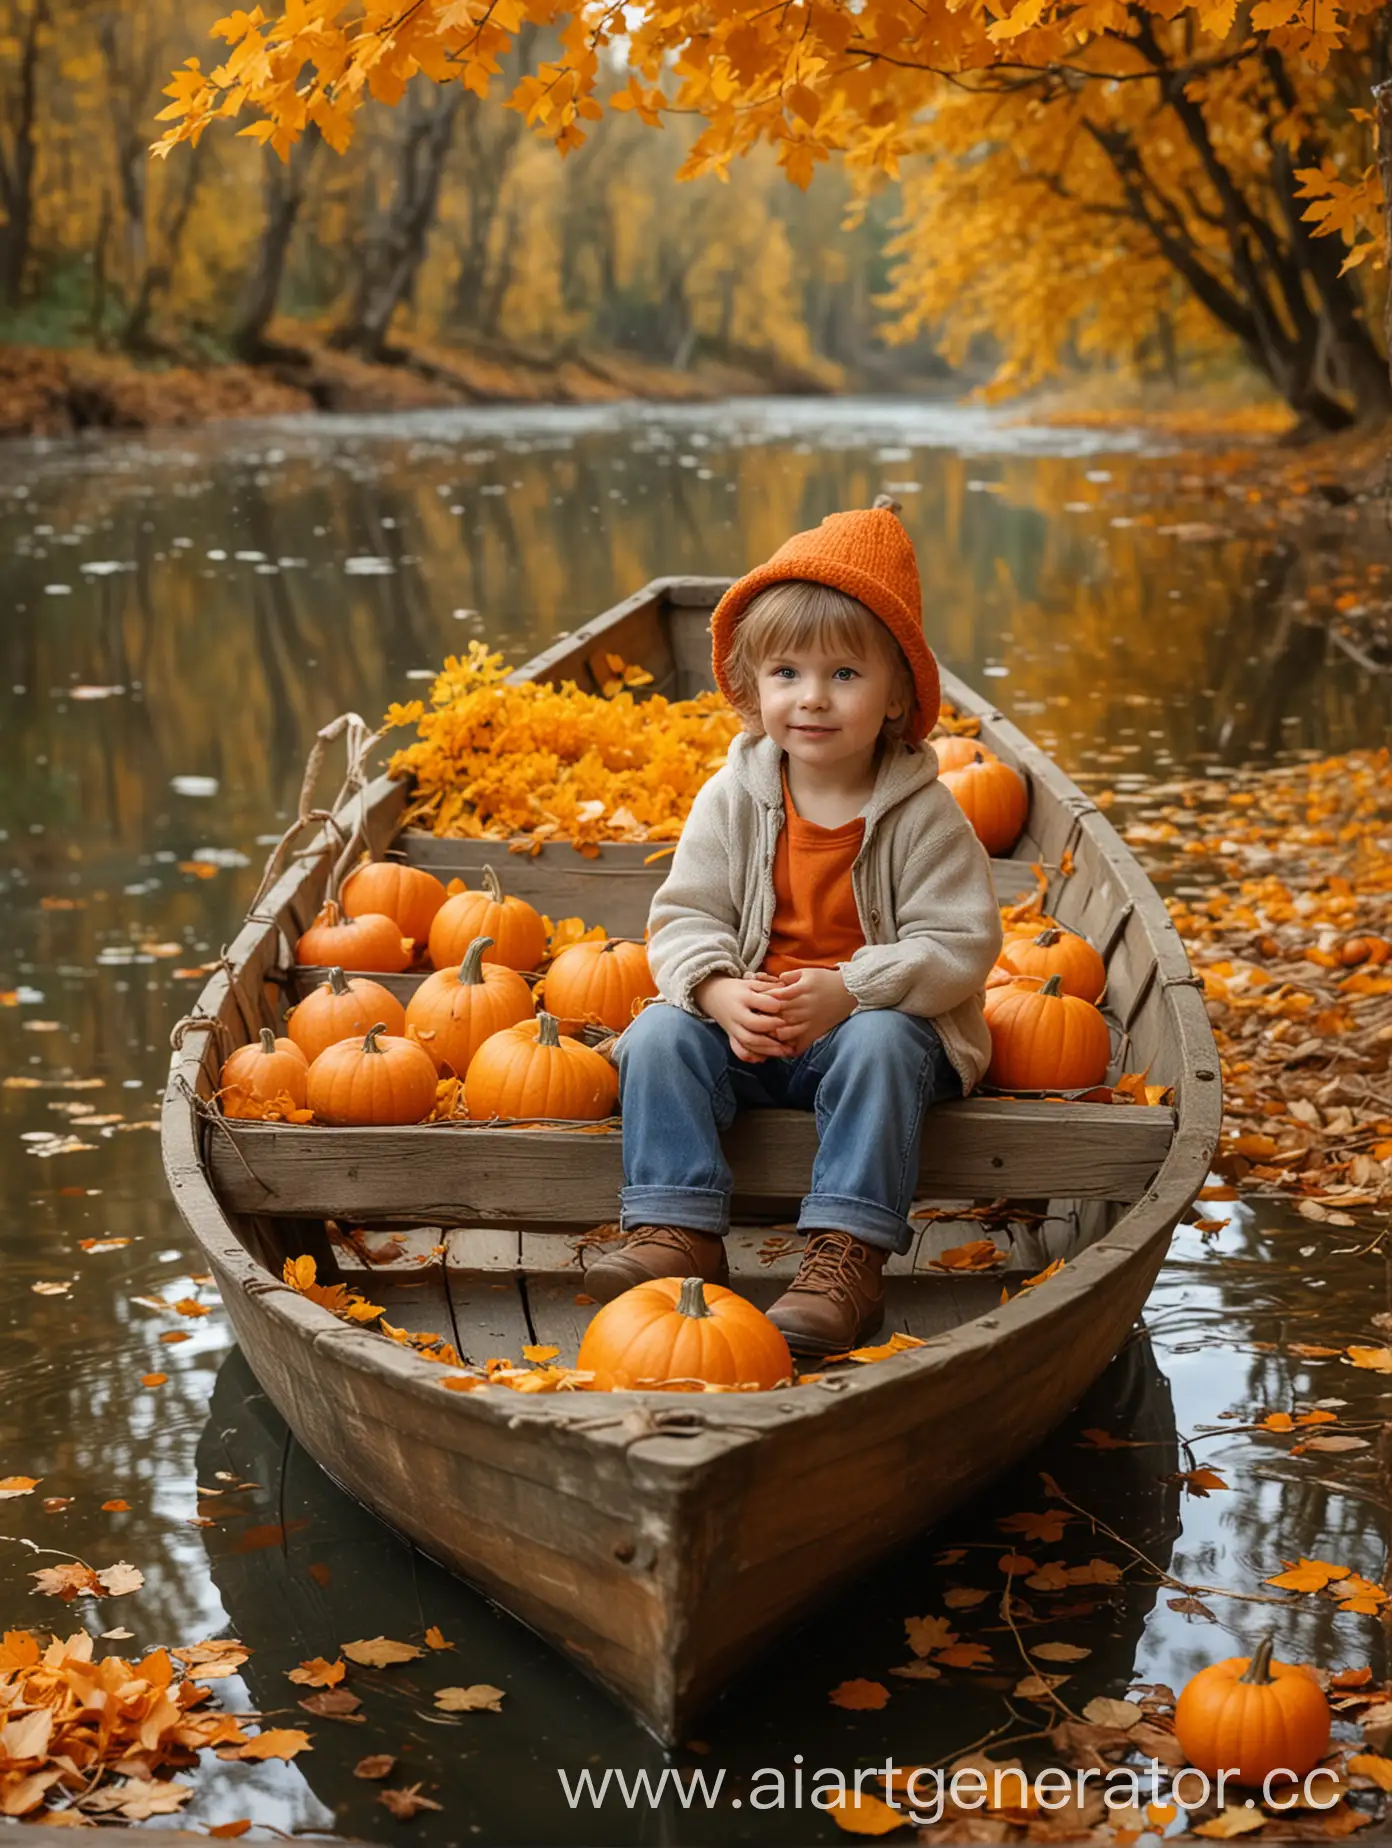 Маленький ребенок сидит в лодке на реке, рядом в лодке оранжевые цветы в корзинке и тыква, на фоне осенний лес и падают желтые листья, фон размыт, очень реалистично